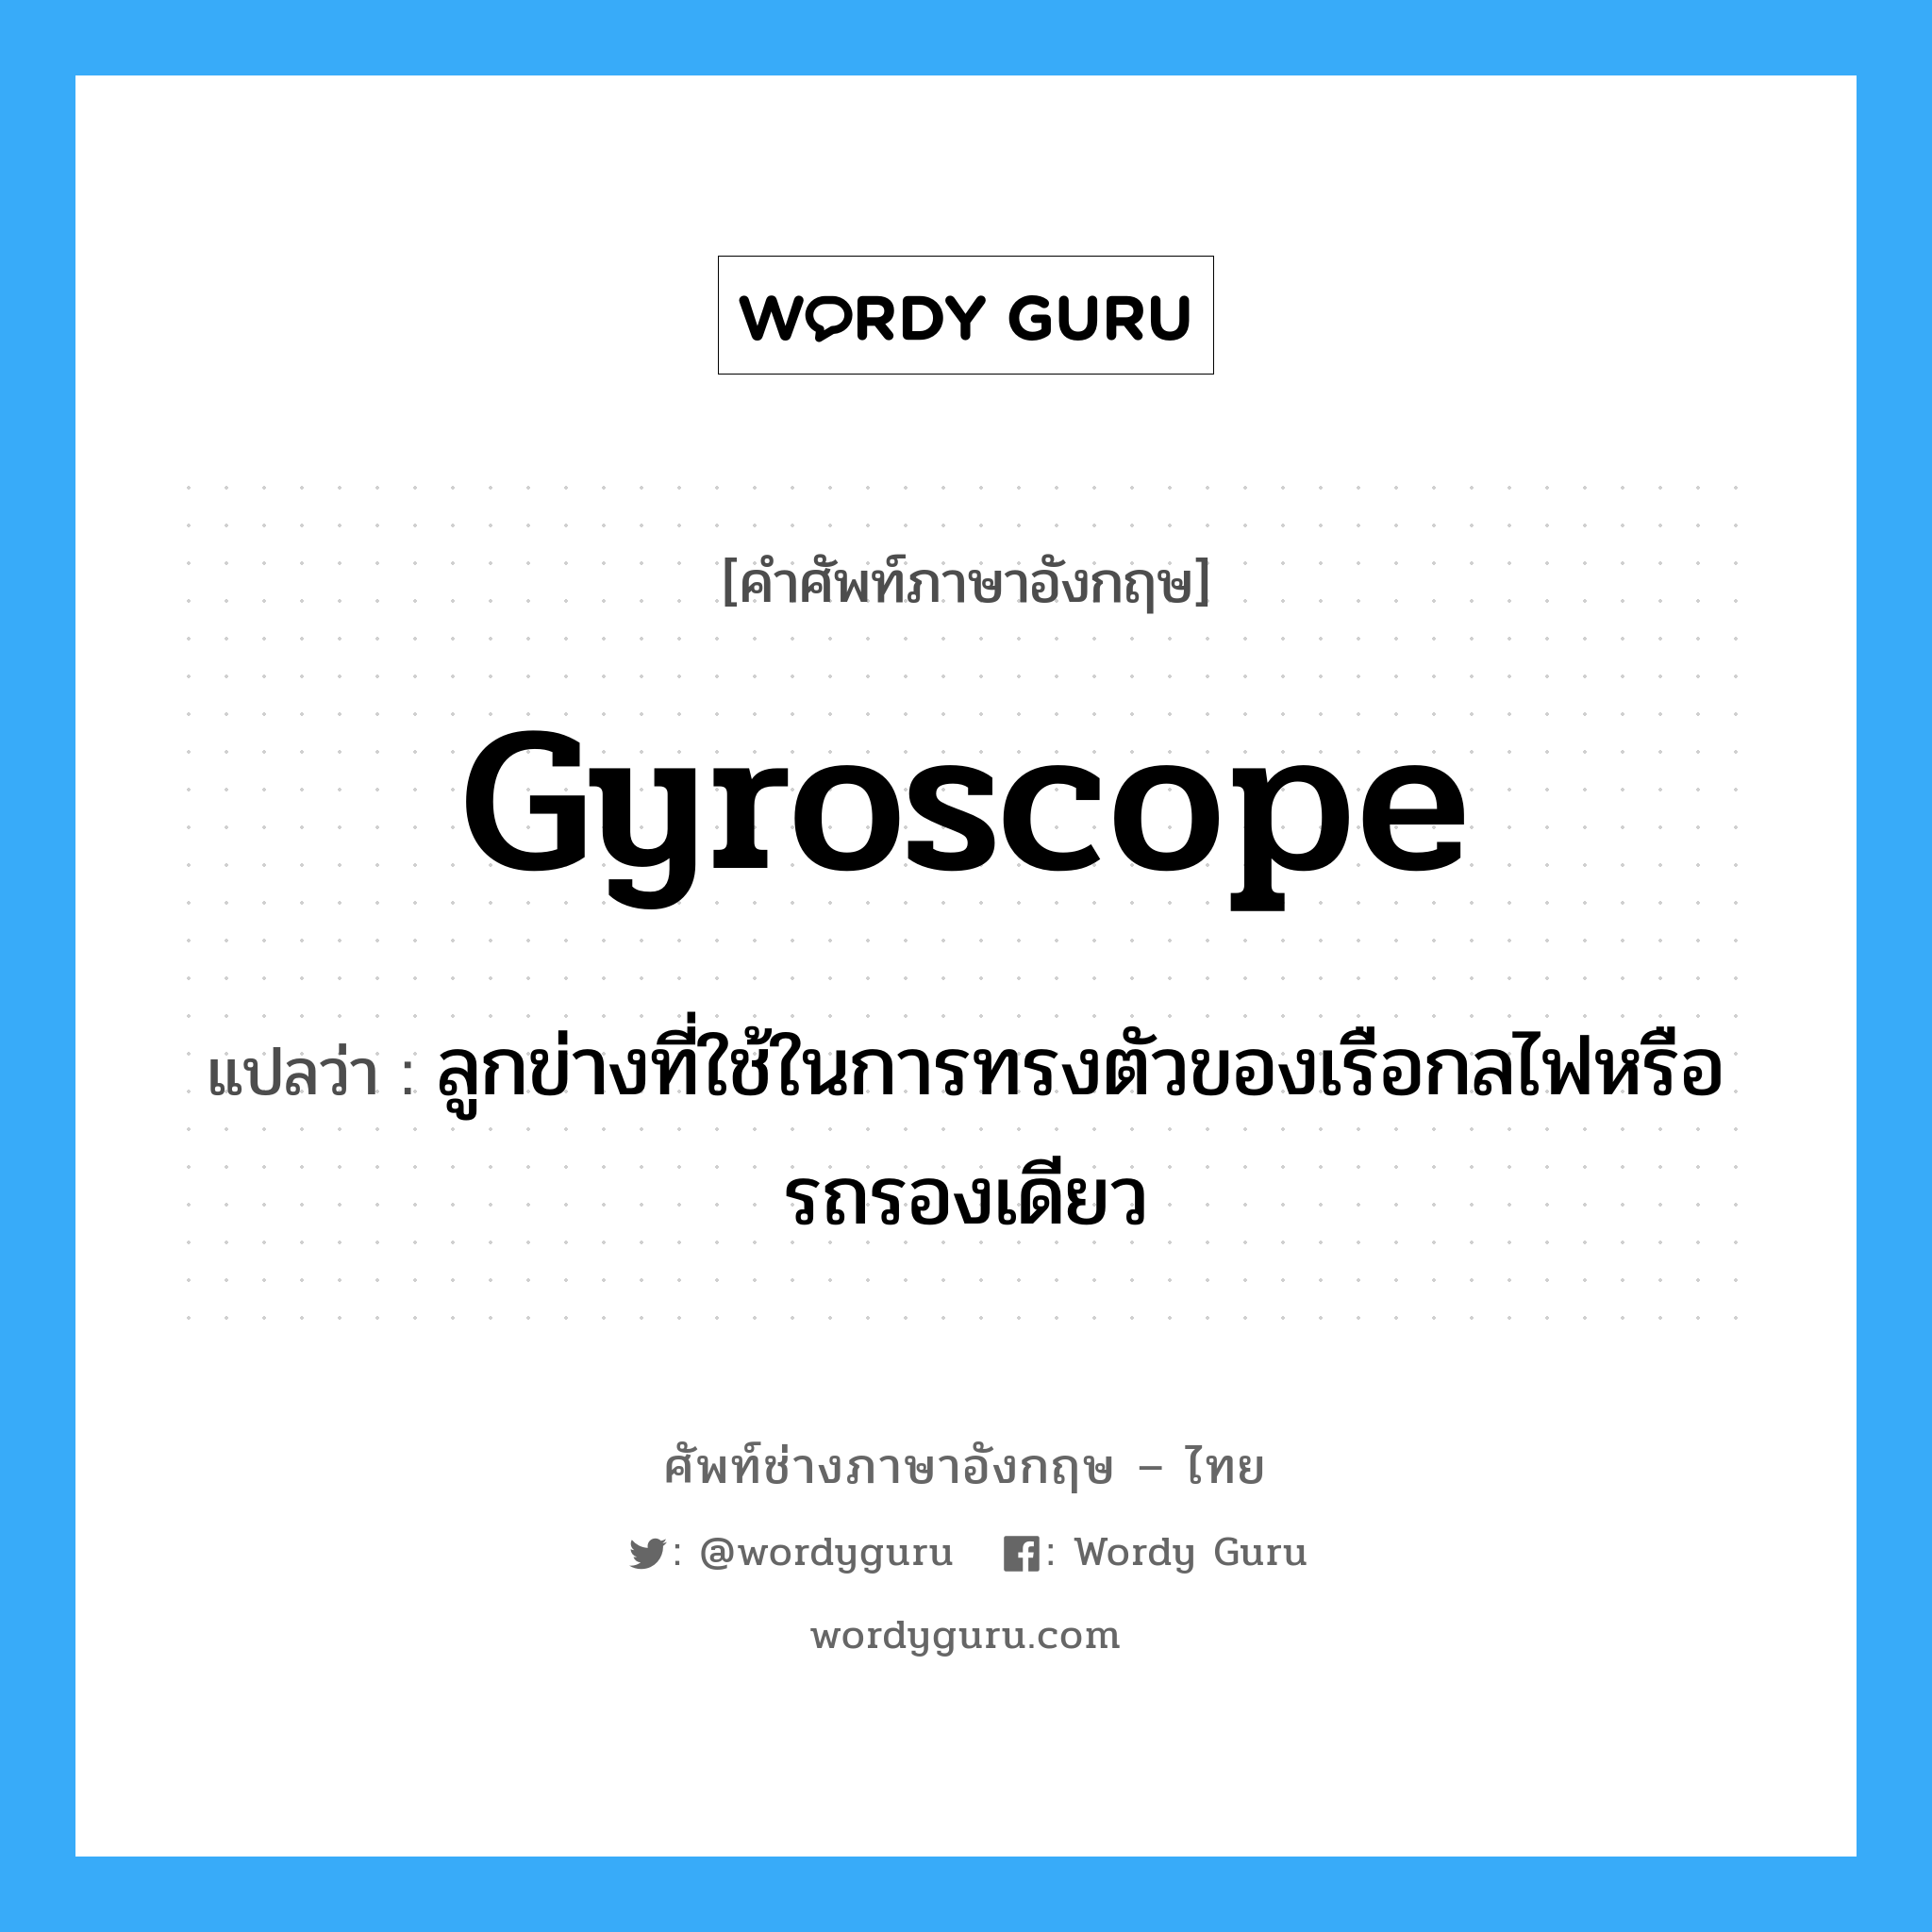 gyroscope แปลว่า?, คำศัพท์ช่างภาษาอังกฤษ - ไทย gyroscope คำศัพท์ภาษาอังกฤษ gyroscope แปลว่า ลูกข่างที่ใช้ในการทรงตัวของเรือกลไฟหรือรถรองเดียว